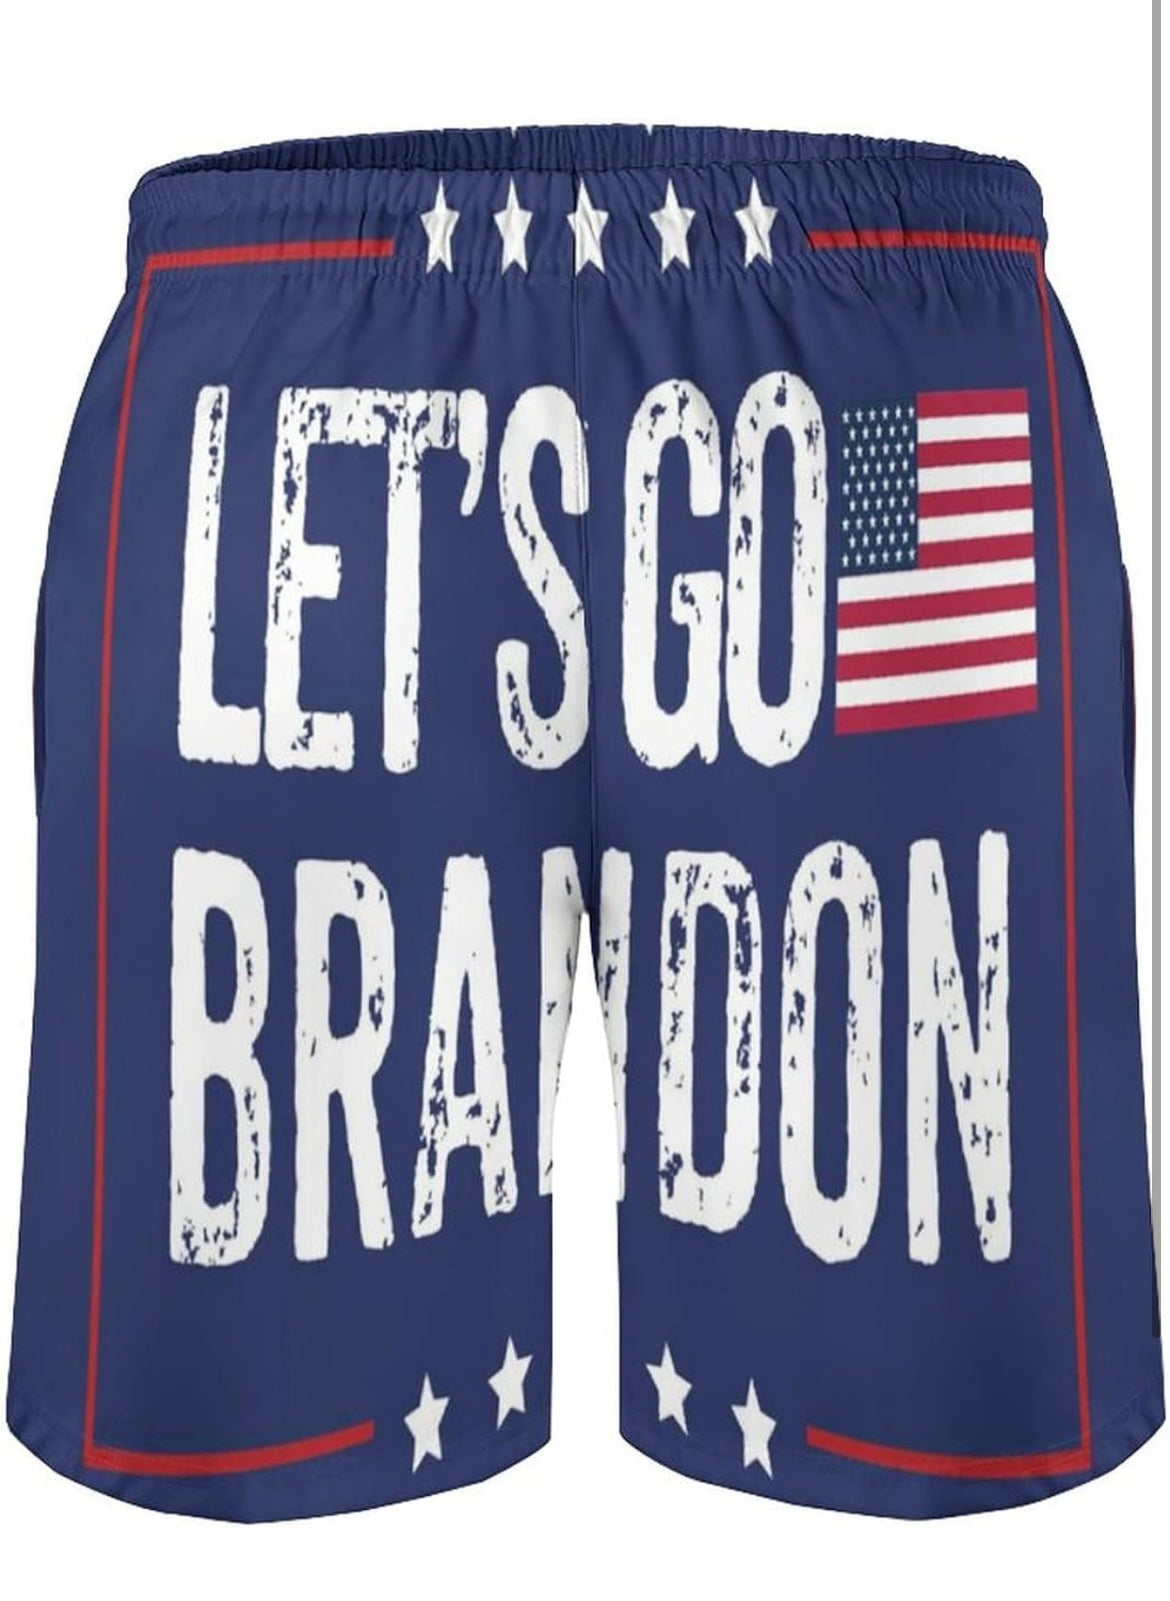 Let’s go Brandon swim trunks